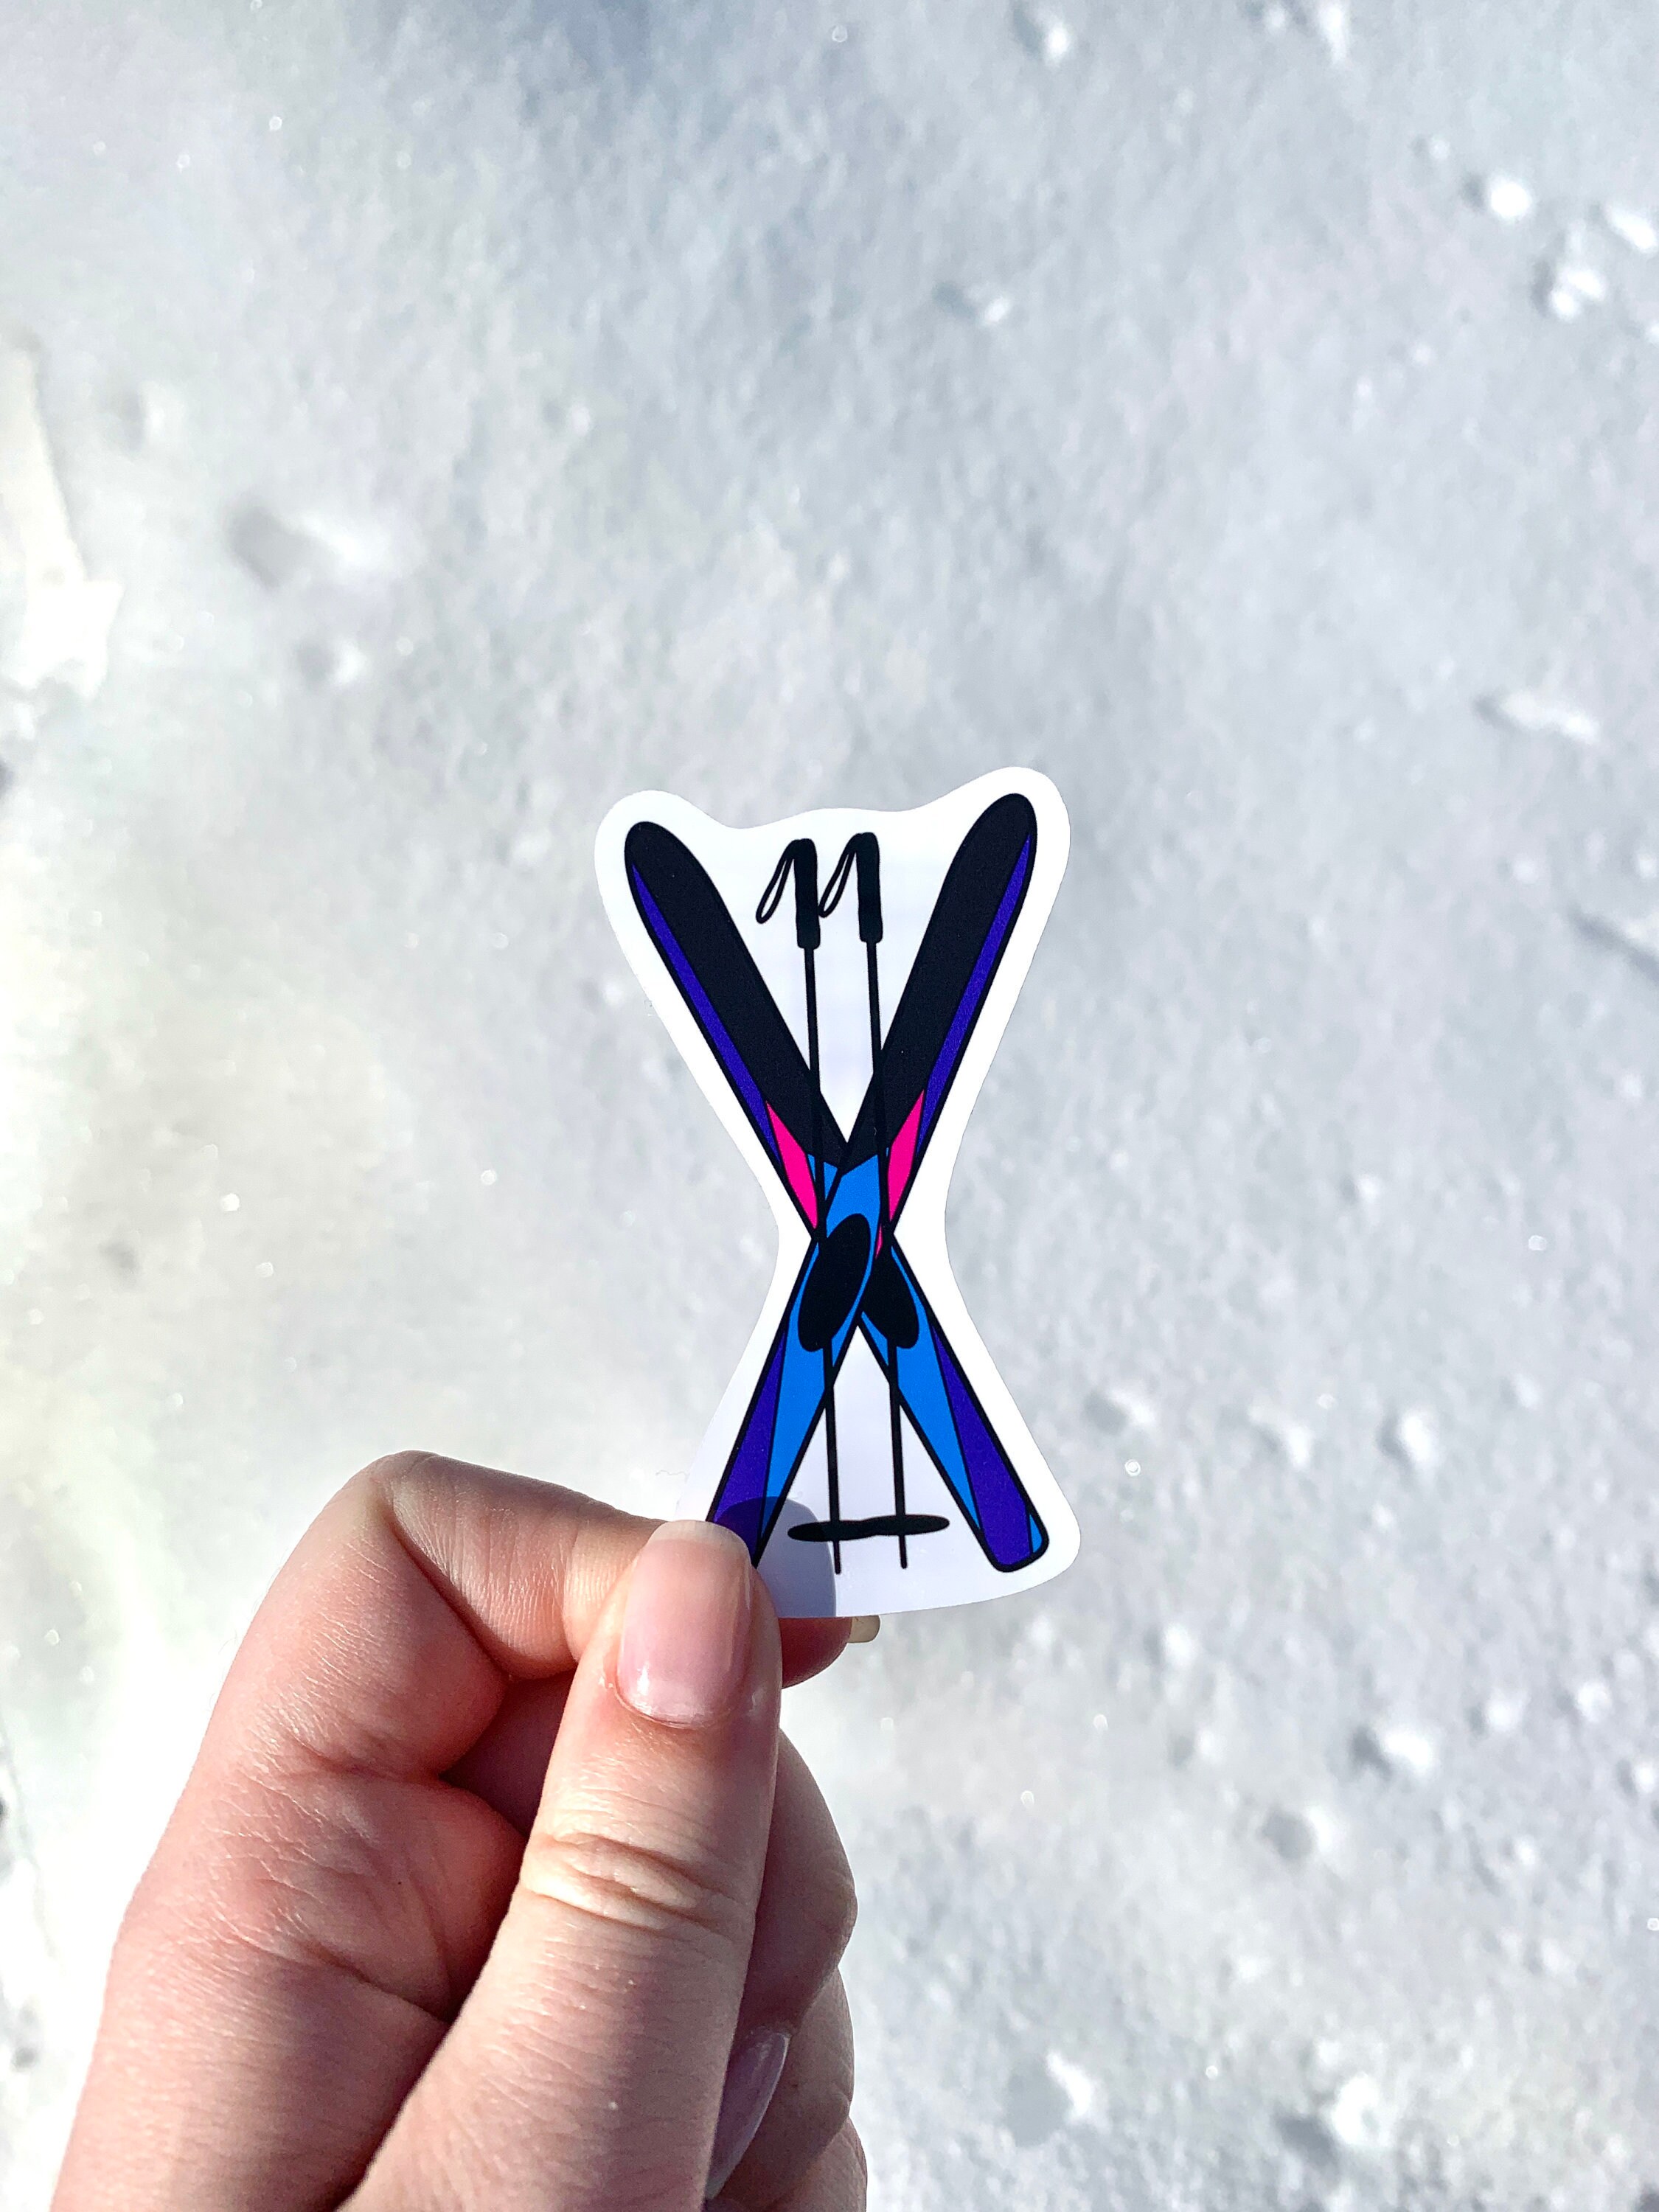 Ski Snow Winter Skier Skis Die Cut Sticker Decal #1 